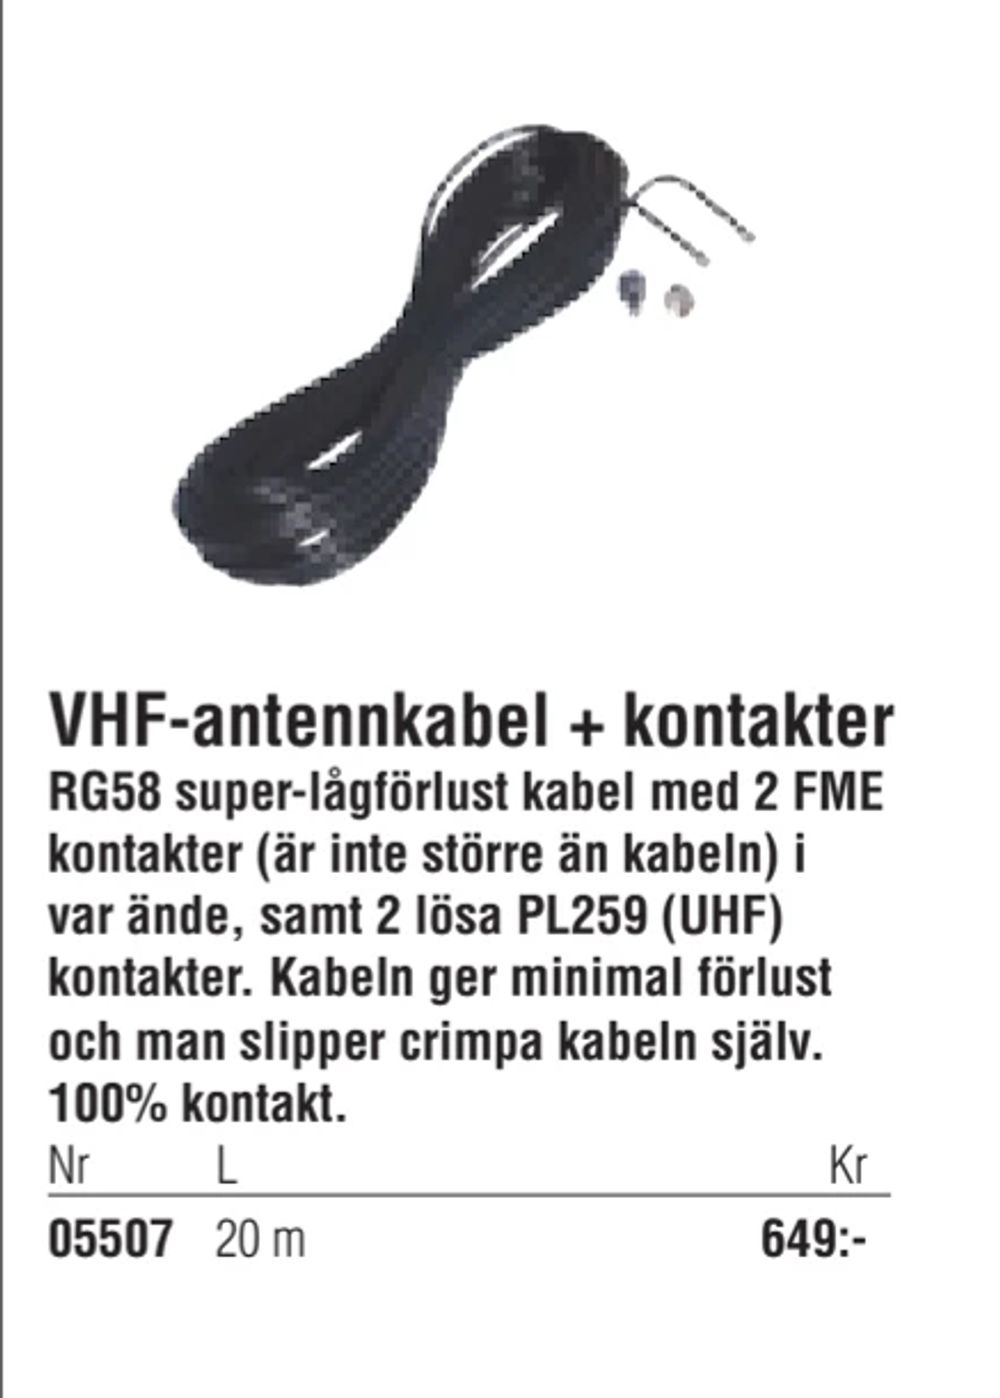 Erbjudanden på VHF-antennkabel + kontakter från Erlandsons Brygga för 649 kr